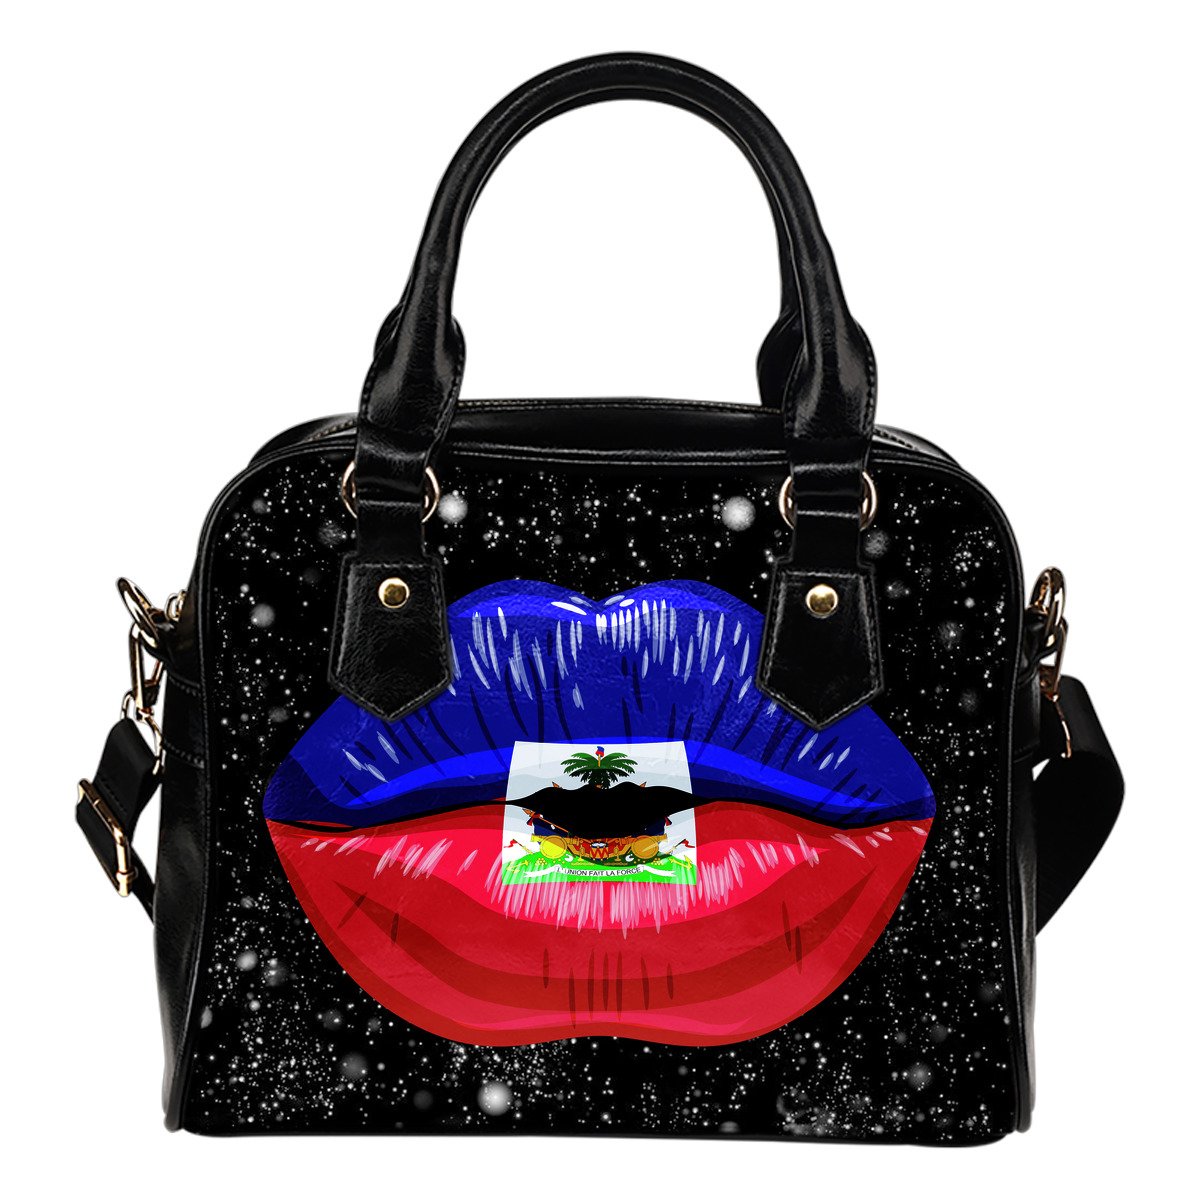 haiti-lips-flag-shoulder-handbag